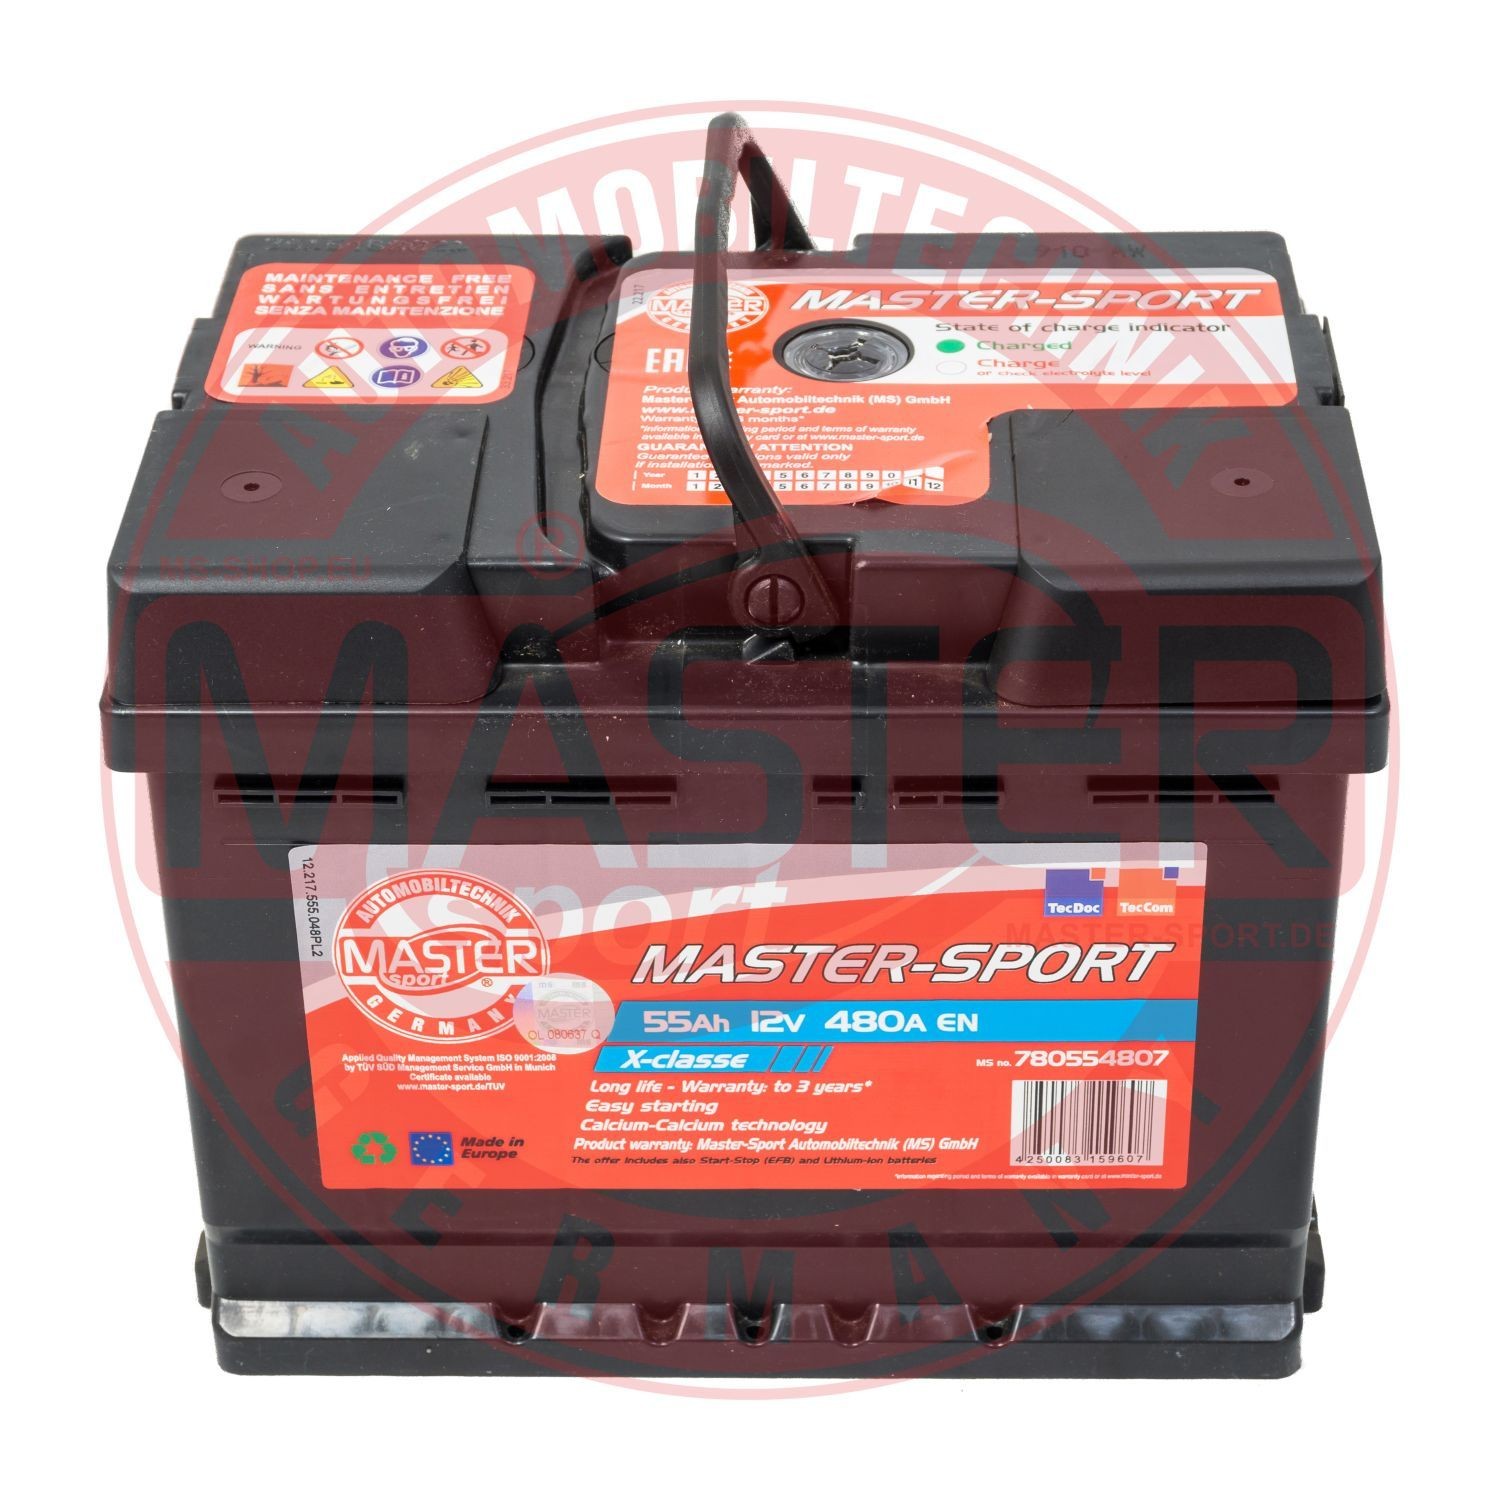 MASTER-SPORT 750554802 Battery 61217567390